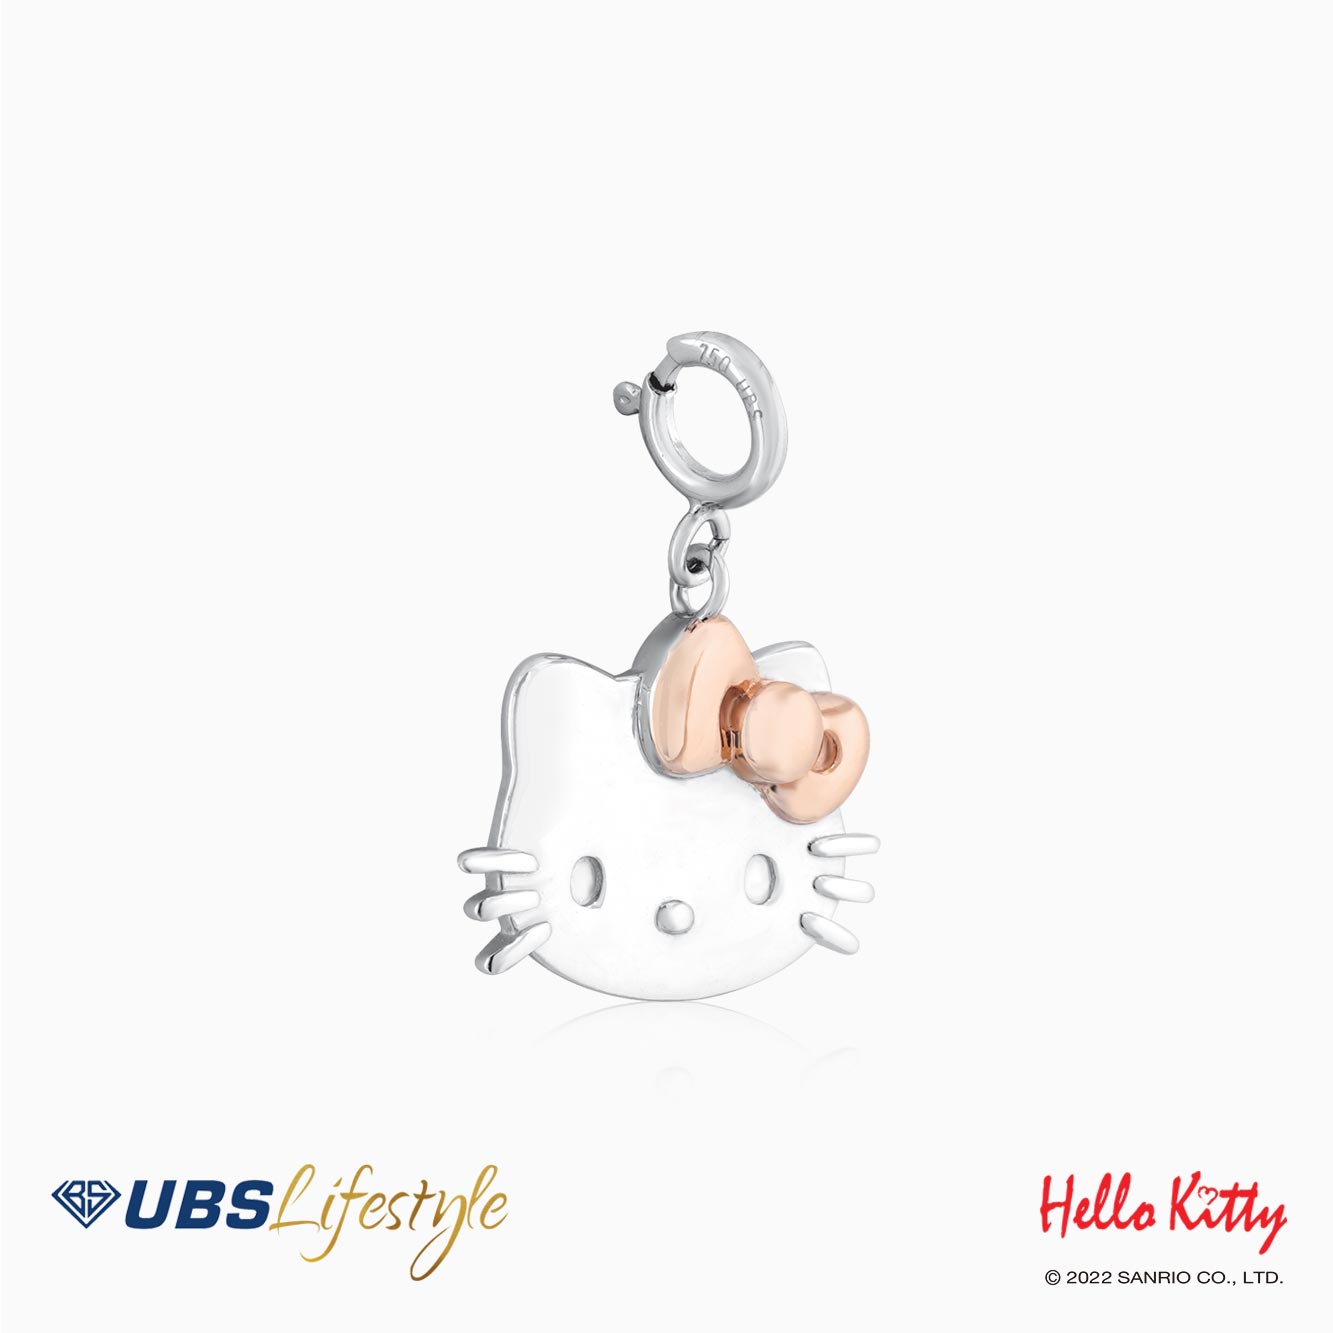 UBS Liontin Emas Sanrio Hello Kitty - Cmz0018W - 17K